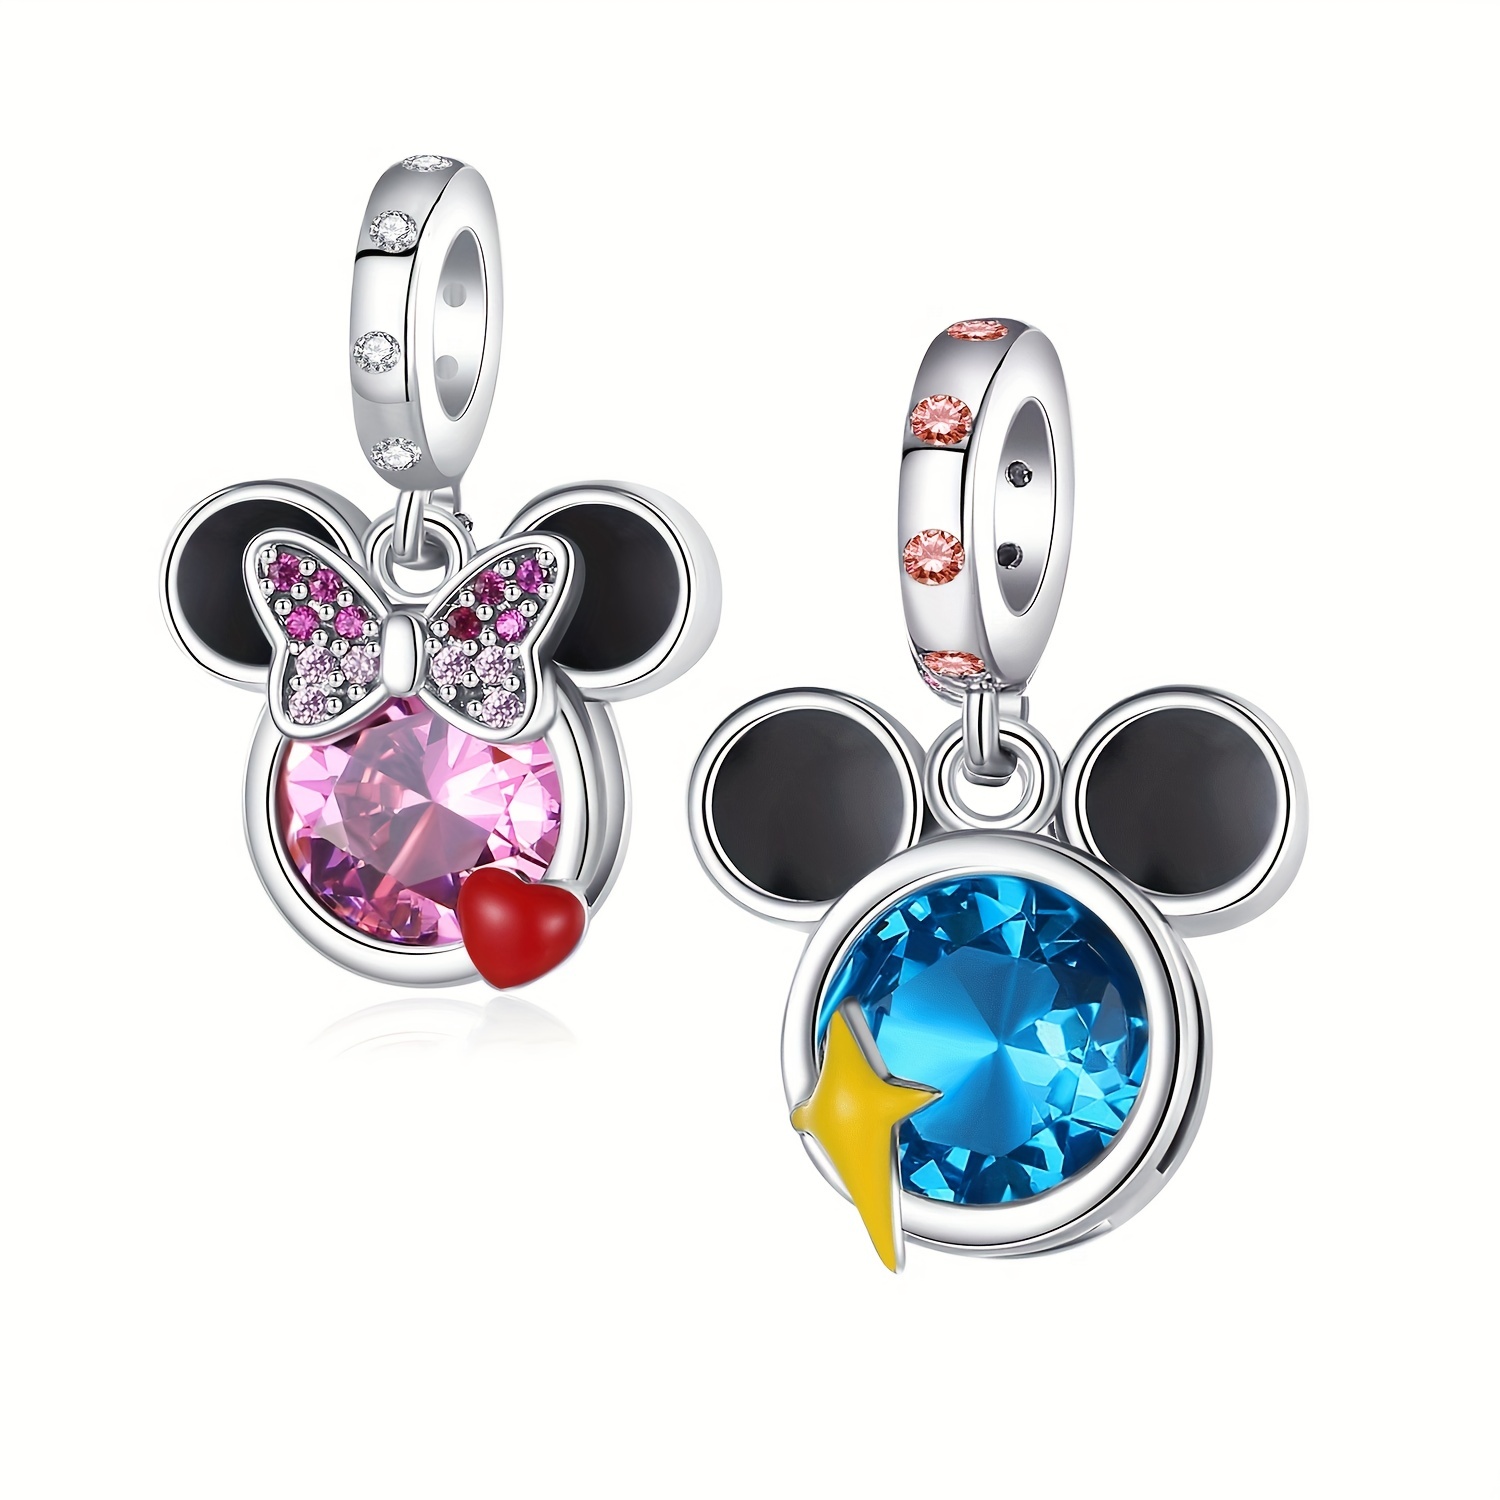 Disney Kingdom Hearts Silver Open Bezel Charms, Disney Resin Craft, Disney Charm, Mickey Charms